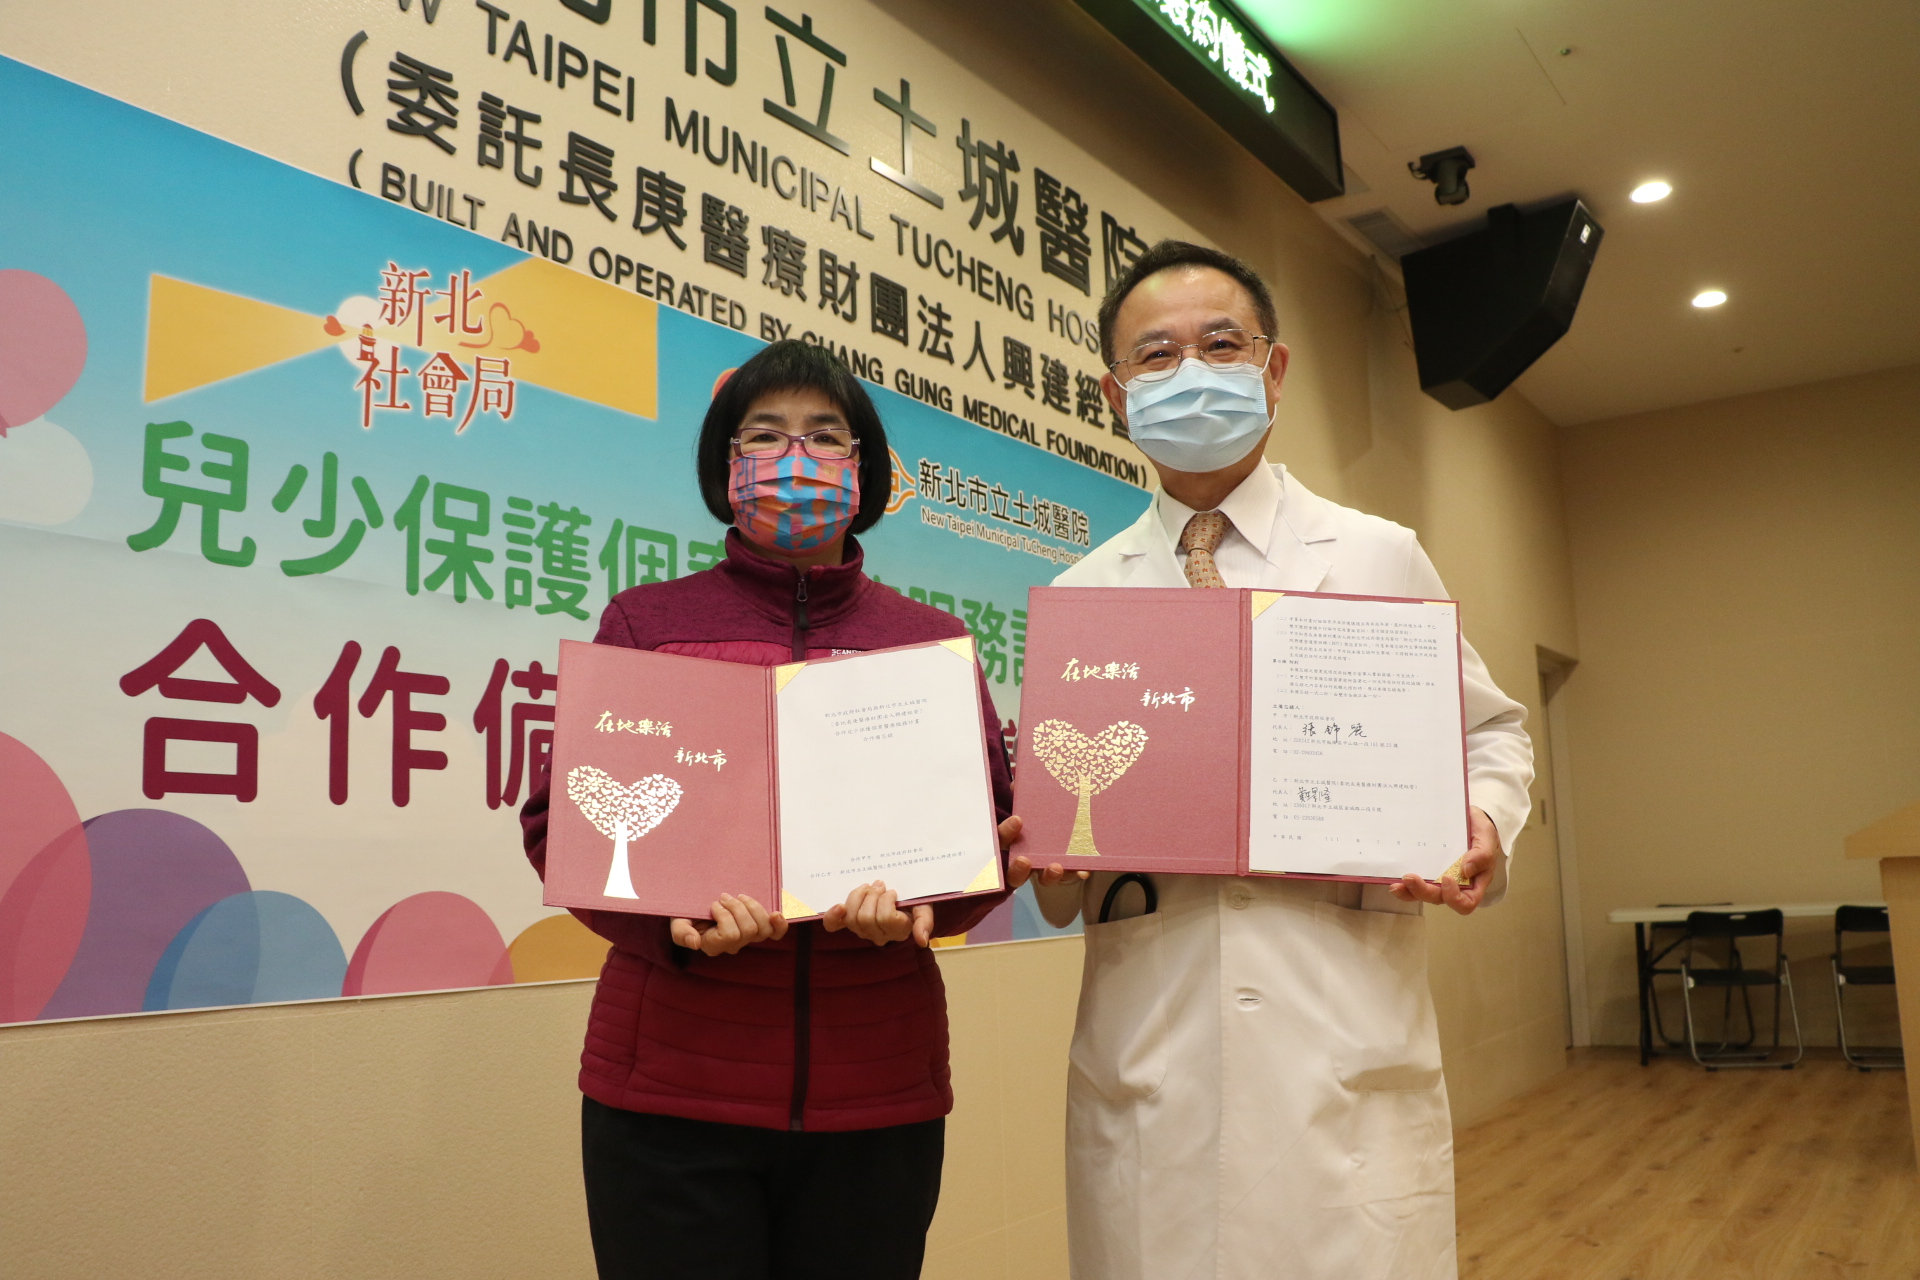 新北市社會局長張錦麗與土城醫院院長黃璟隆簽署雙方合作備忘錄